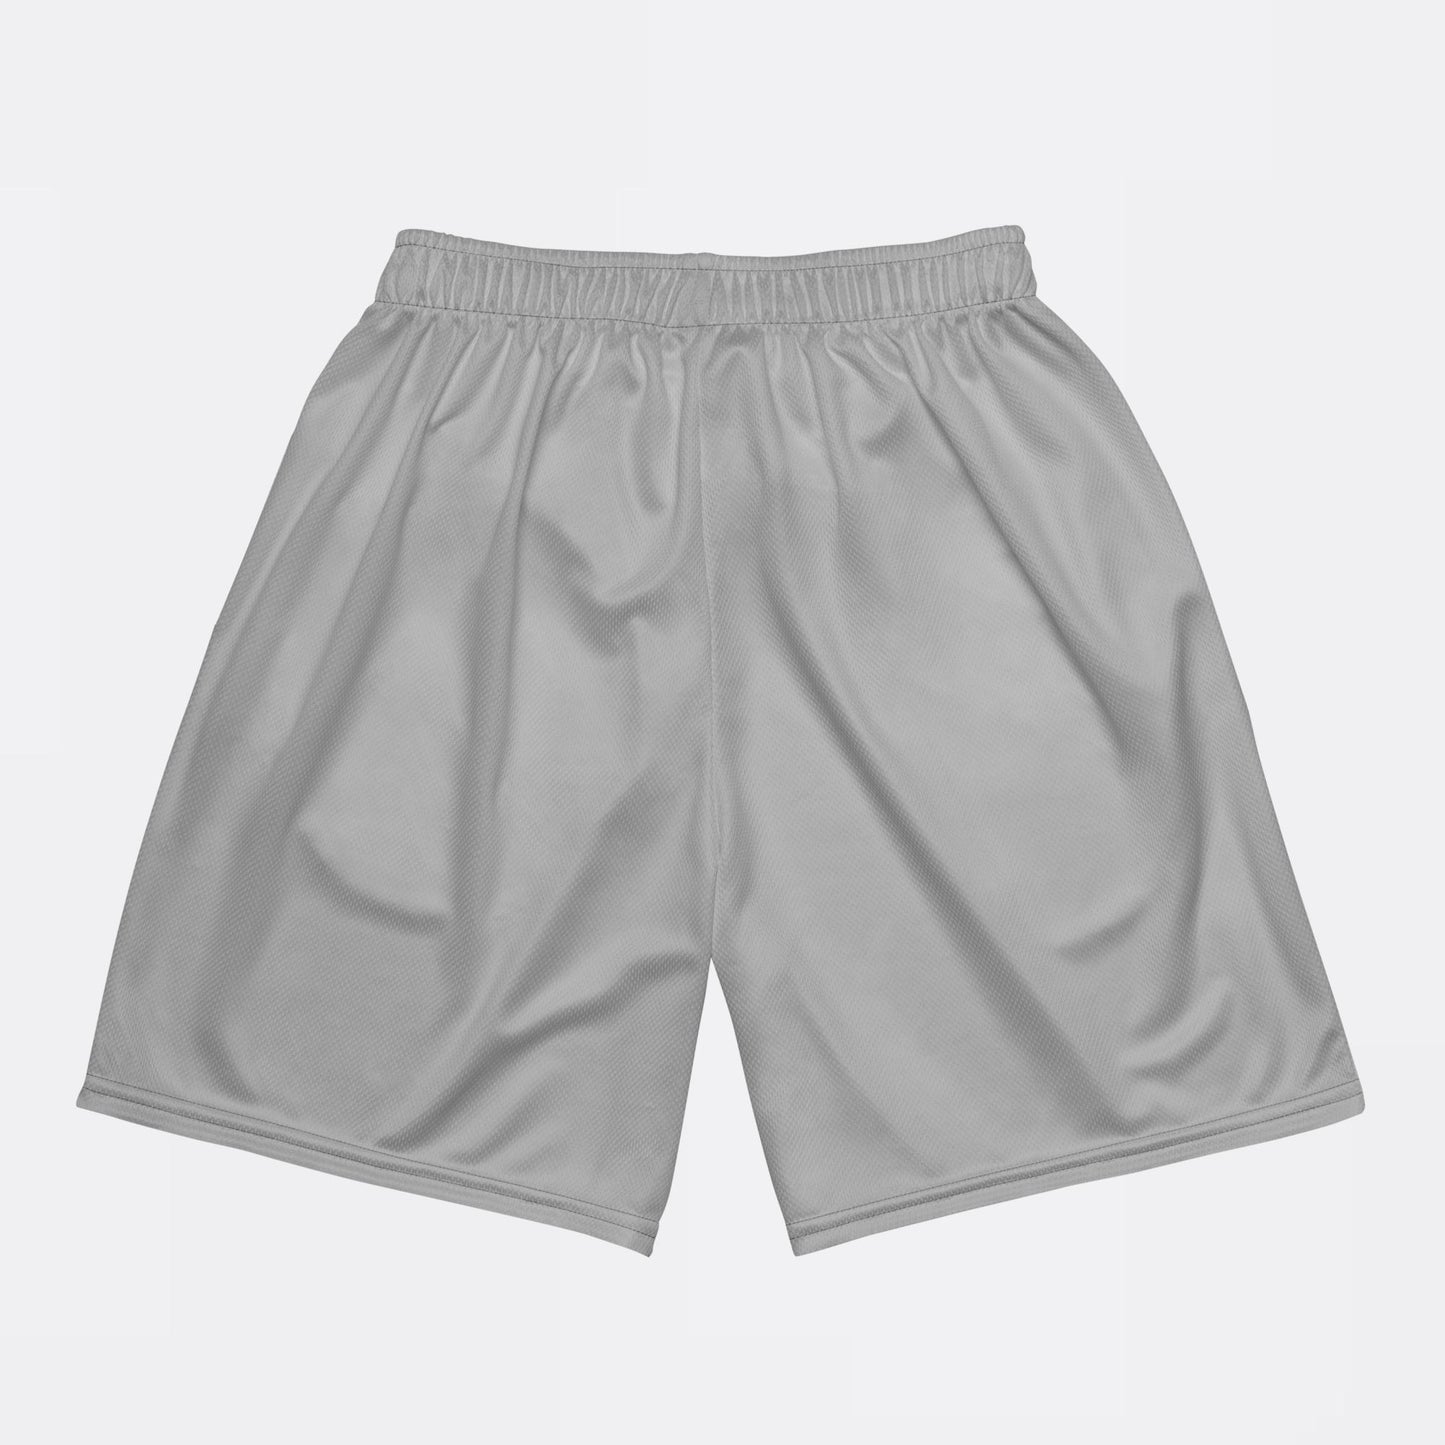 Mesh shorts Grey